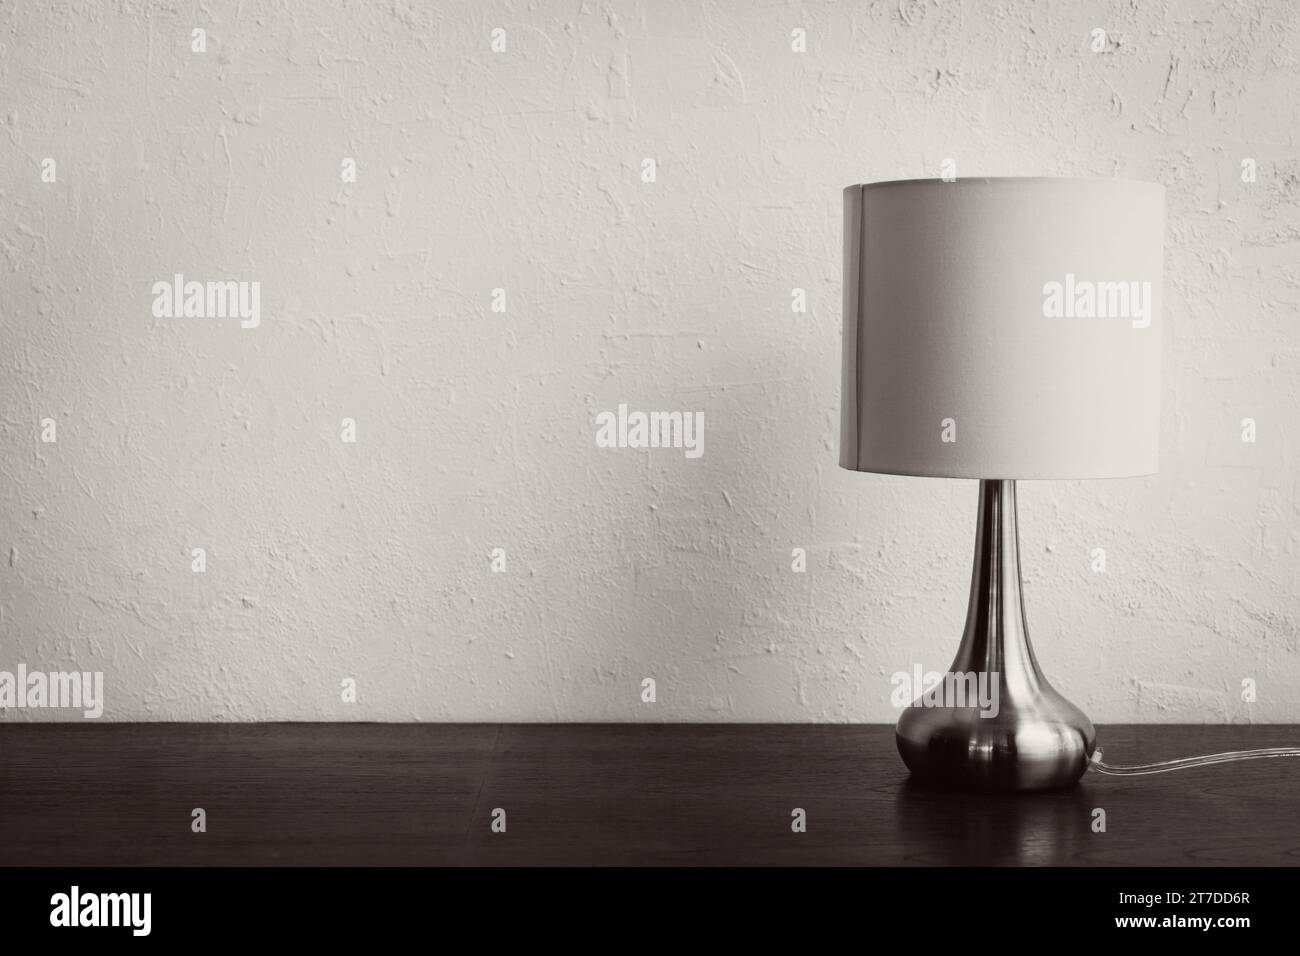 lampe élégante simple minimale sur table en bois contre mur blanc Banque D'Images